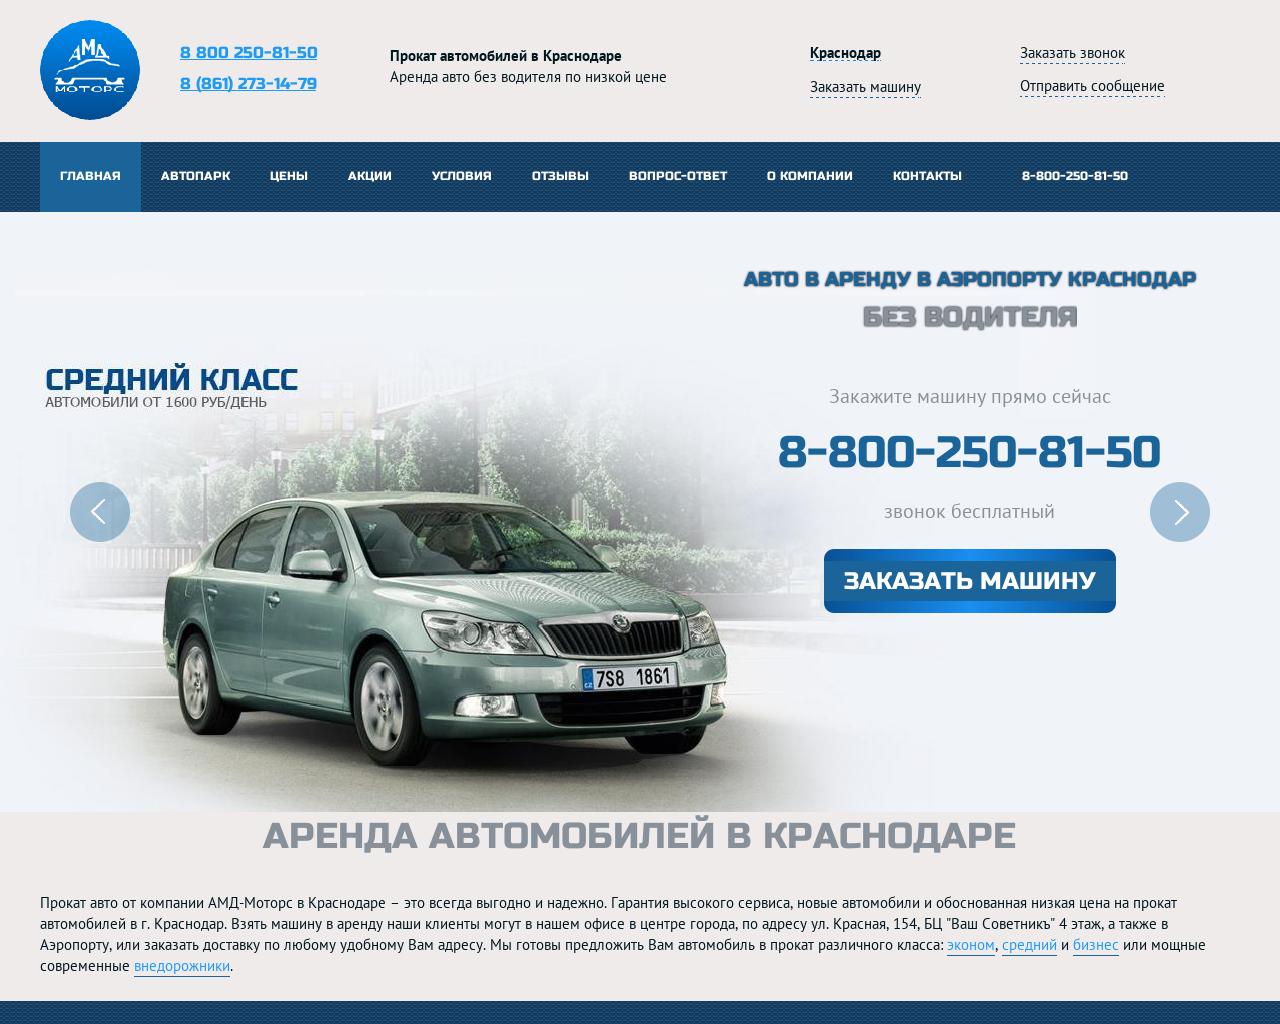 Изображение сайта amd-motors.ru в разрешении 1280x1024